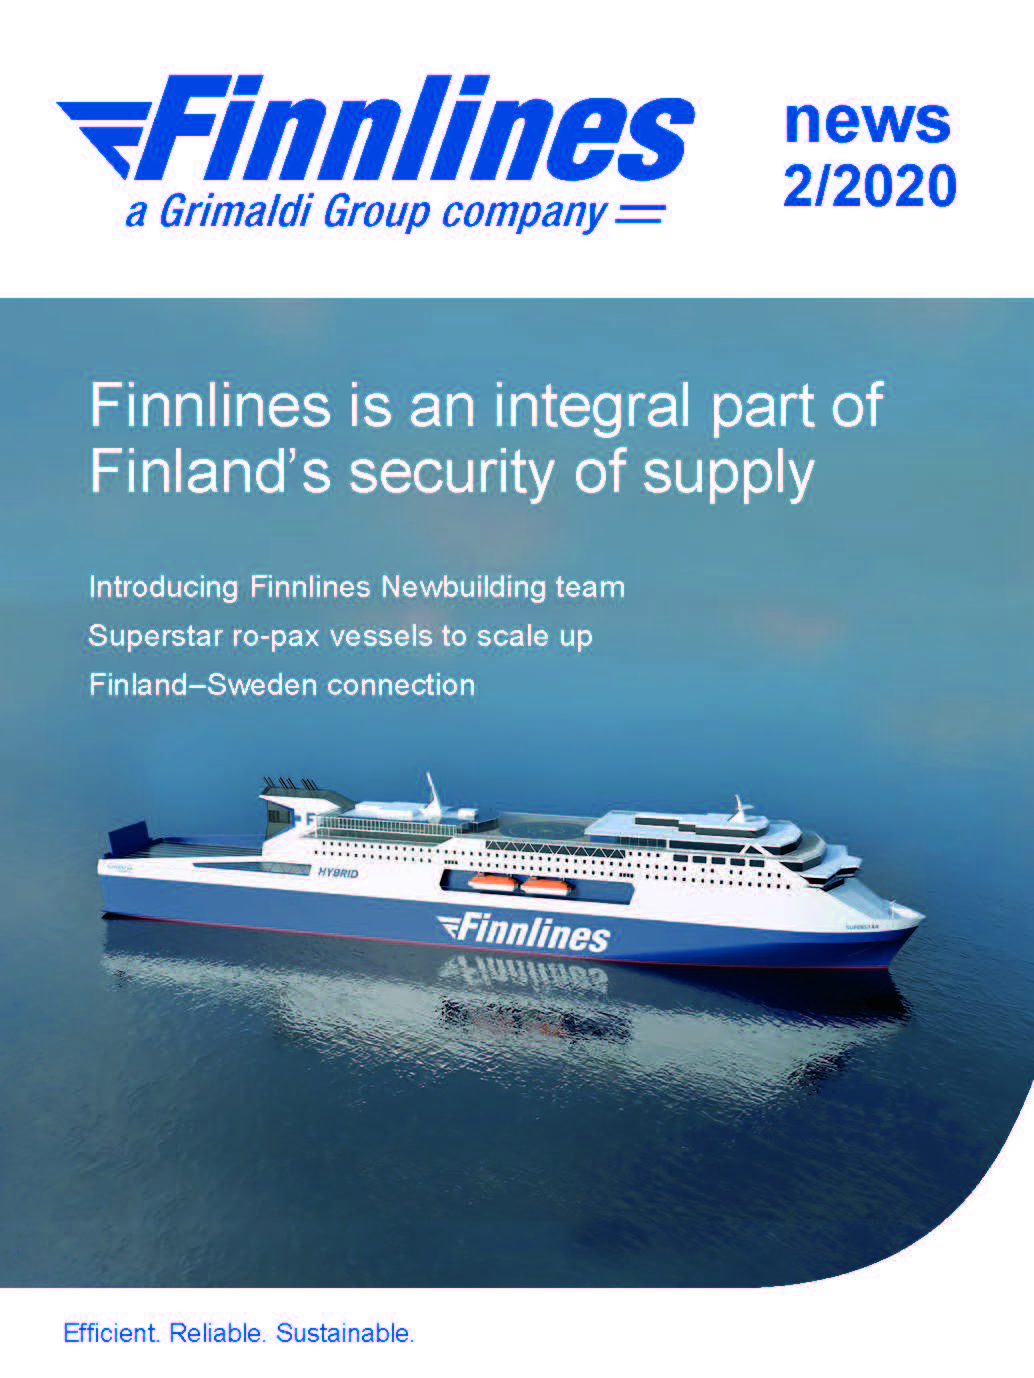 Finnlines News 2/2020